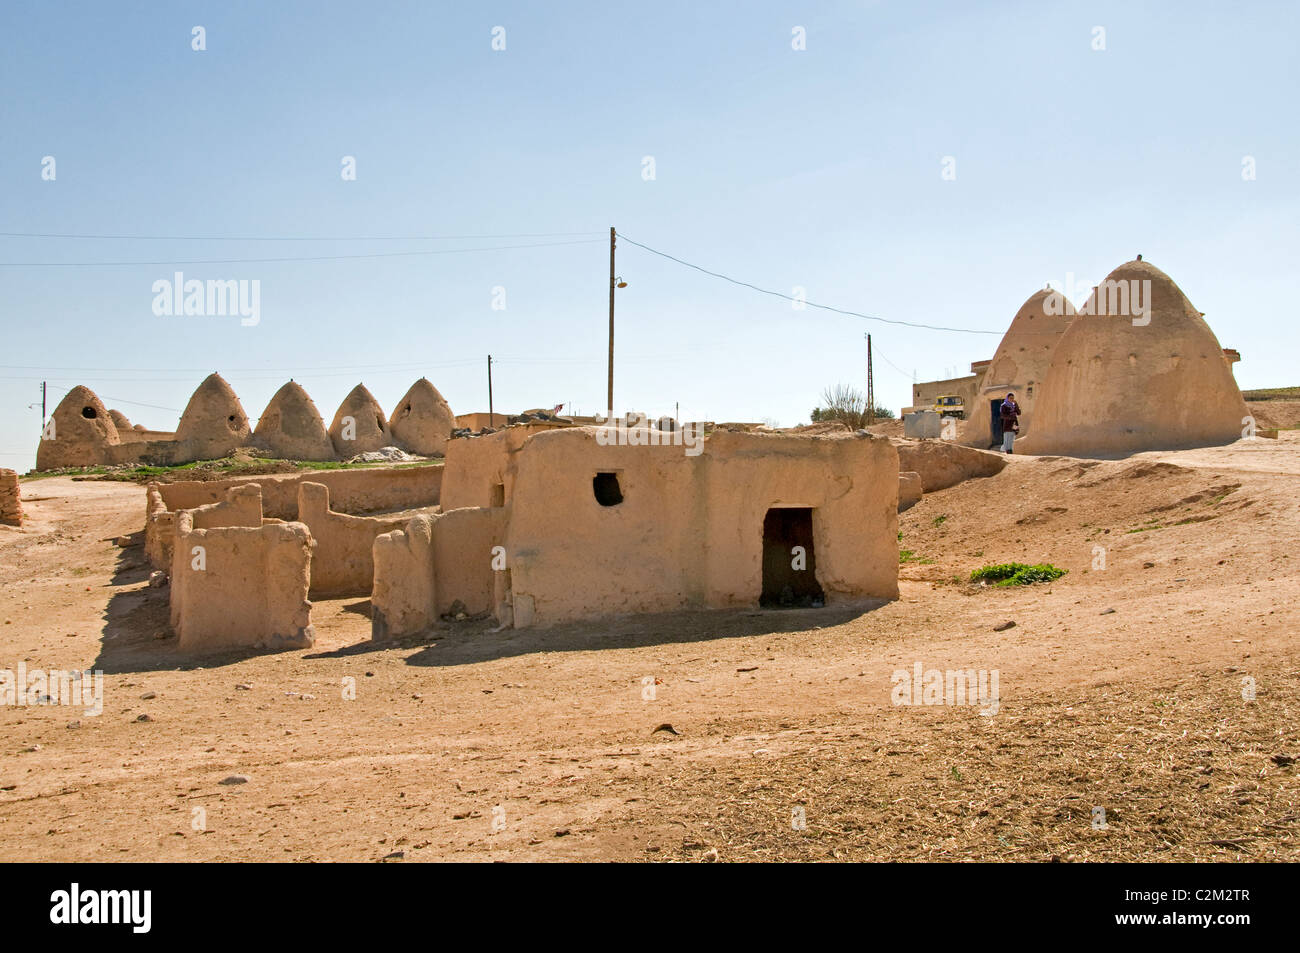 Desierto de Siria Badiyat al Sham, ovejas de granja, cultura, aldeas beduinas beduinas, hombre mujer, Oriente Medio sirio Foto de stock